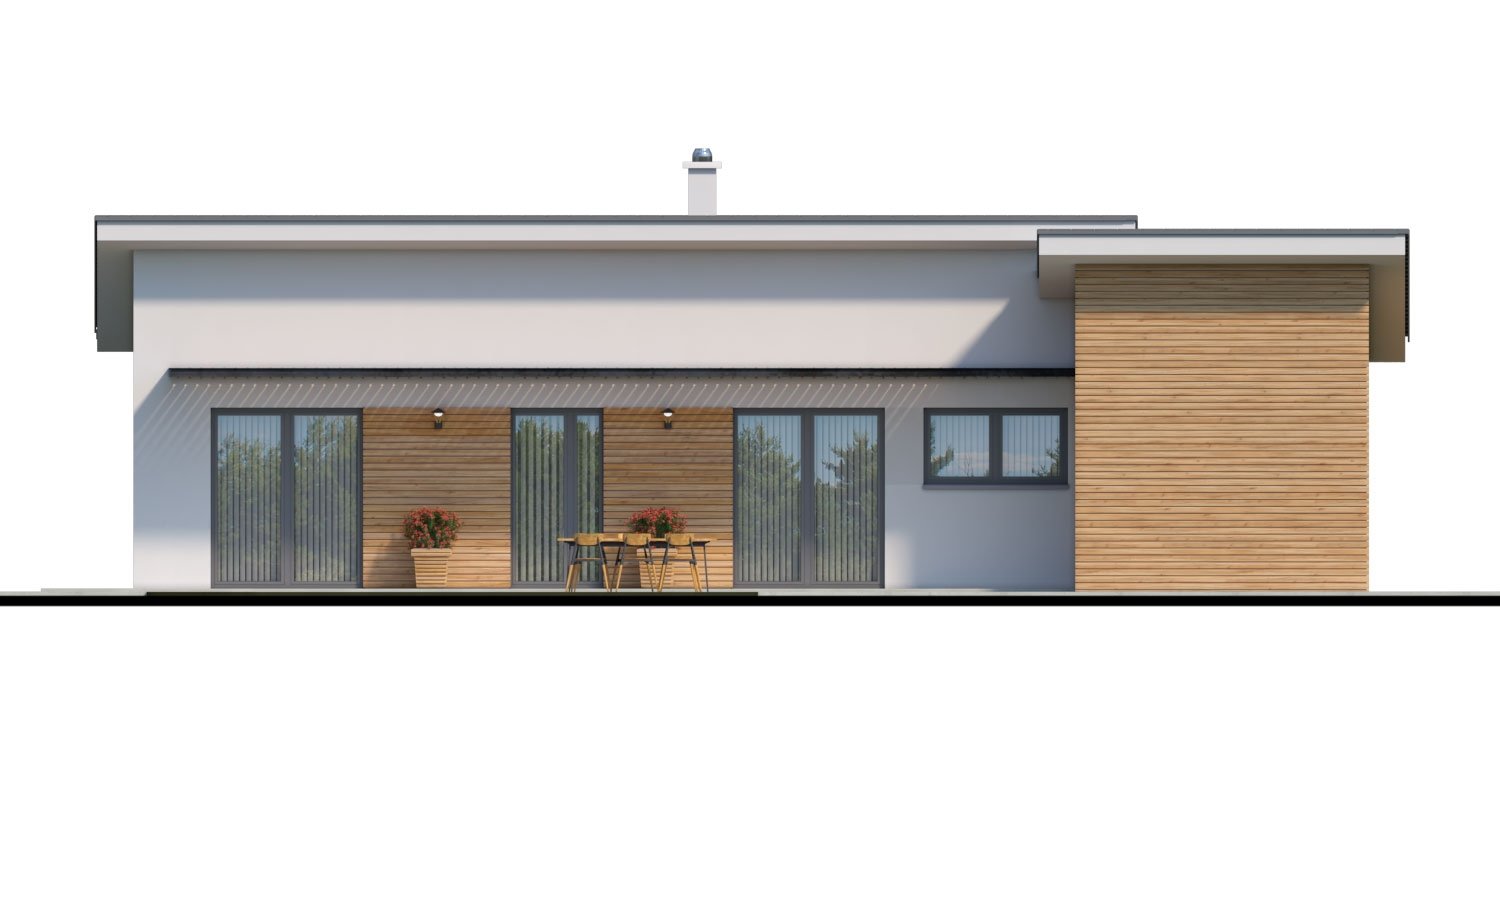 Pohľad 3. - Moderní malý zděný rodinný dům s garáží, pultovou střechou. Možná realizace s dvojgaráží, nebo bez garáže. Vhodný i jako dvojdům nebo do řadové zástavby.